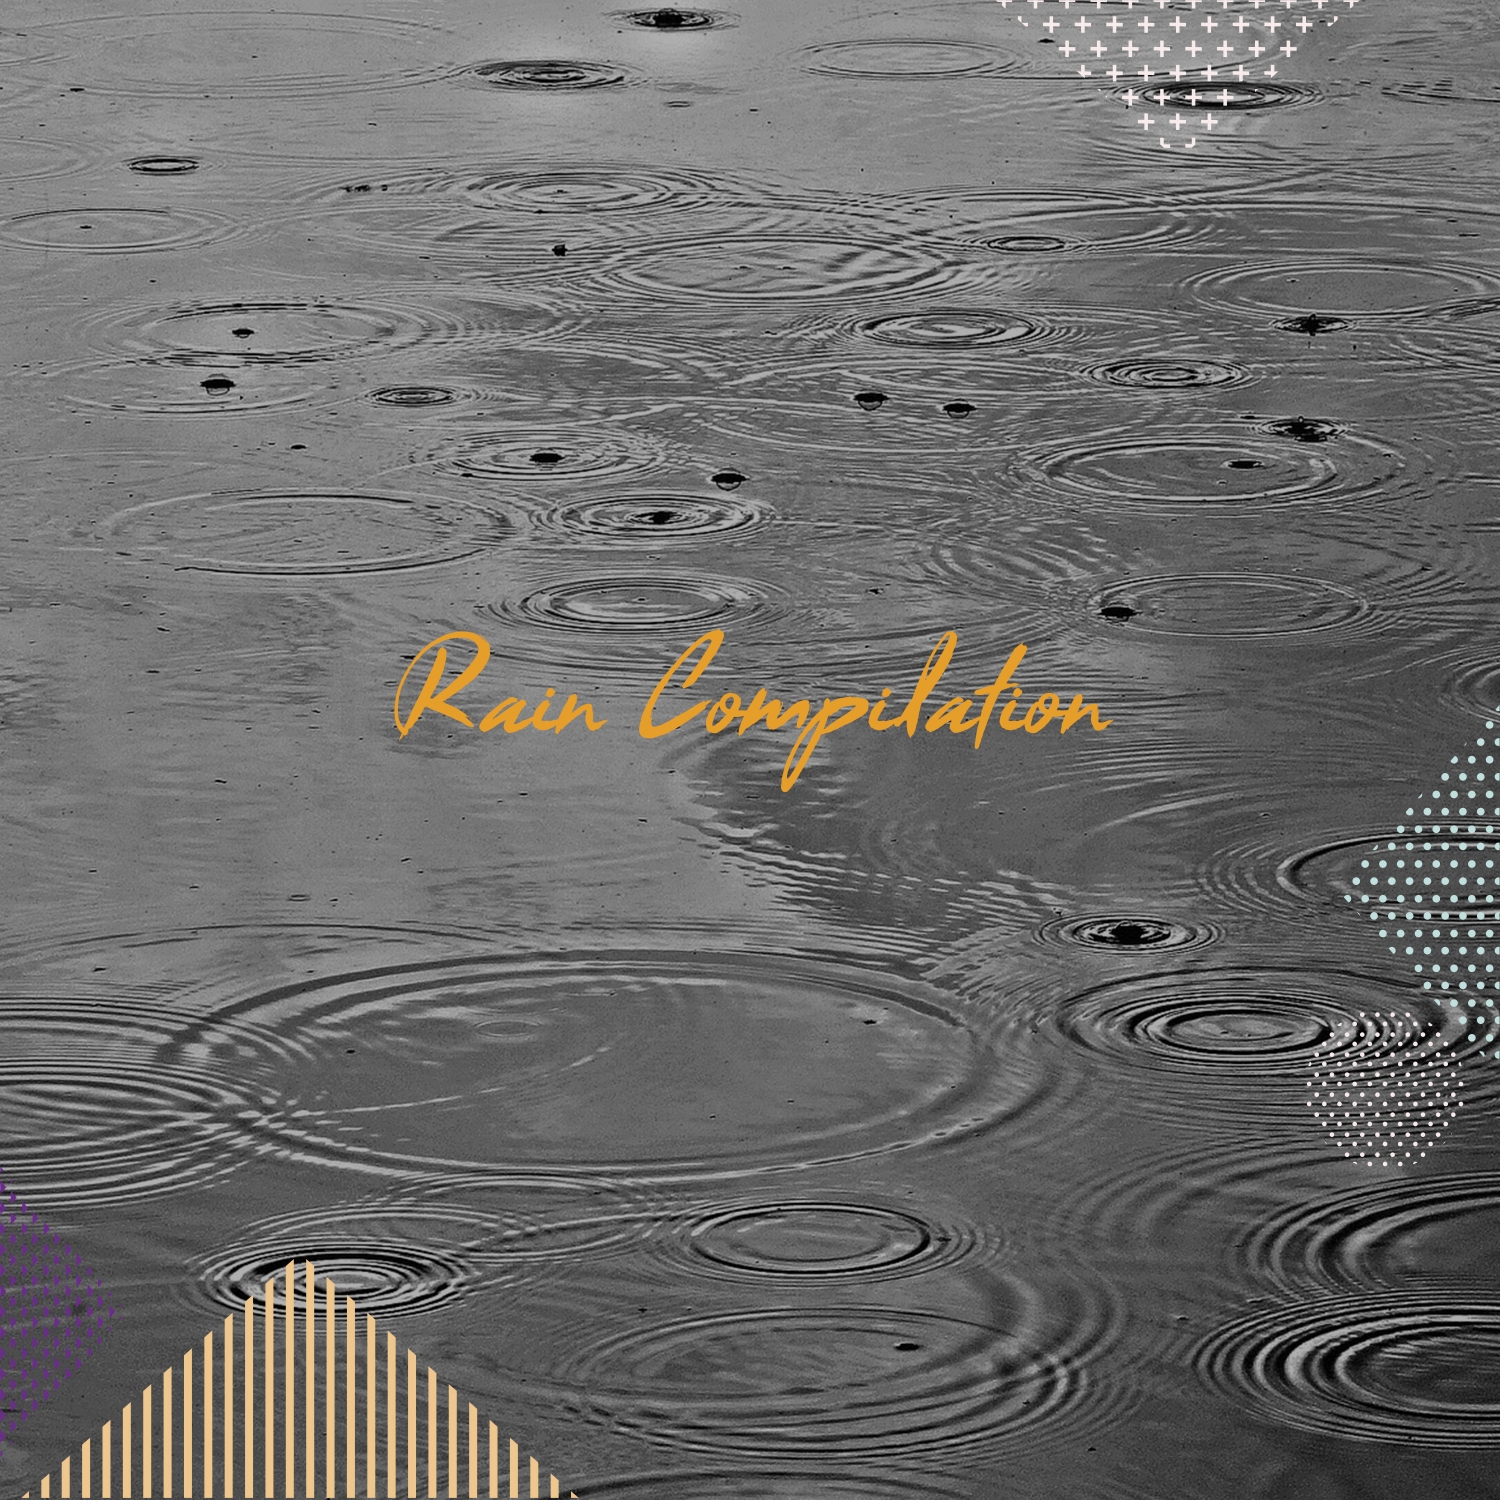 2017 Ambient Rain Sounds Compilation